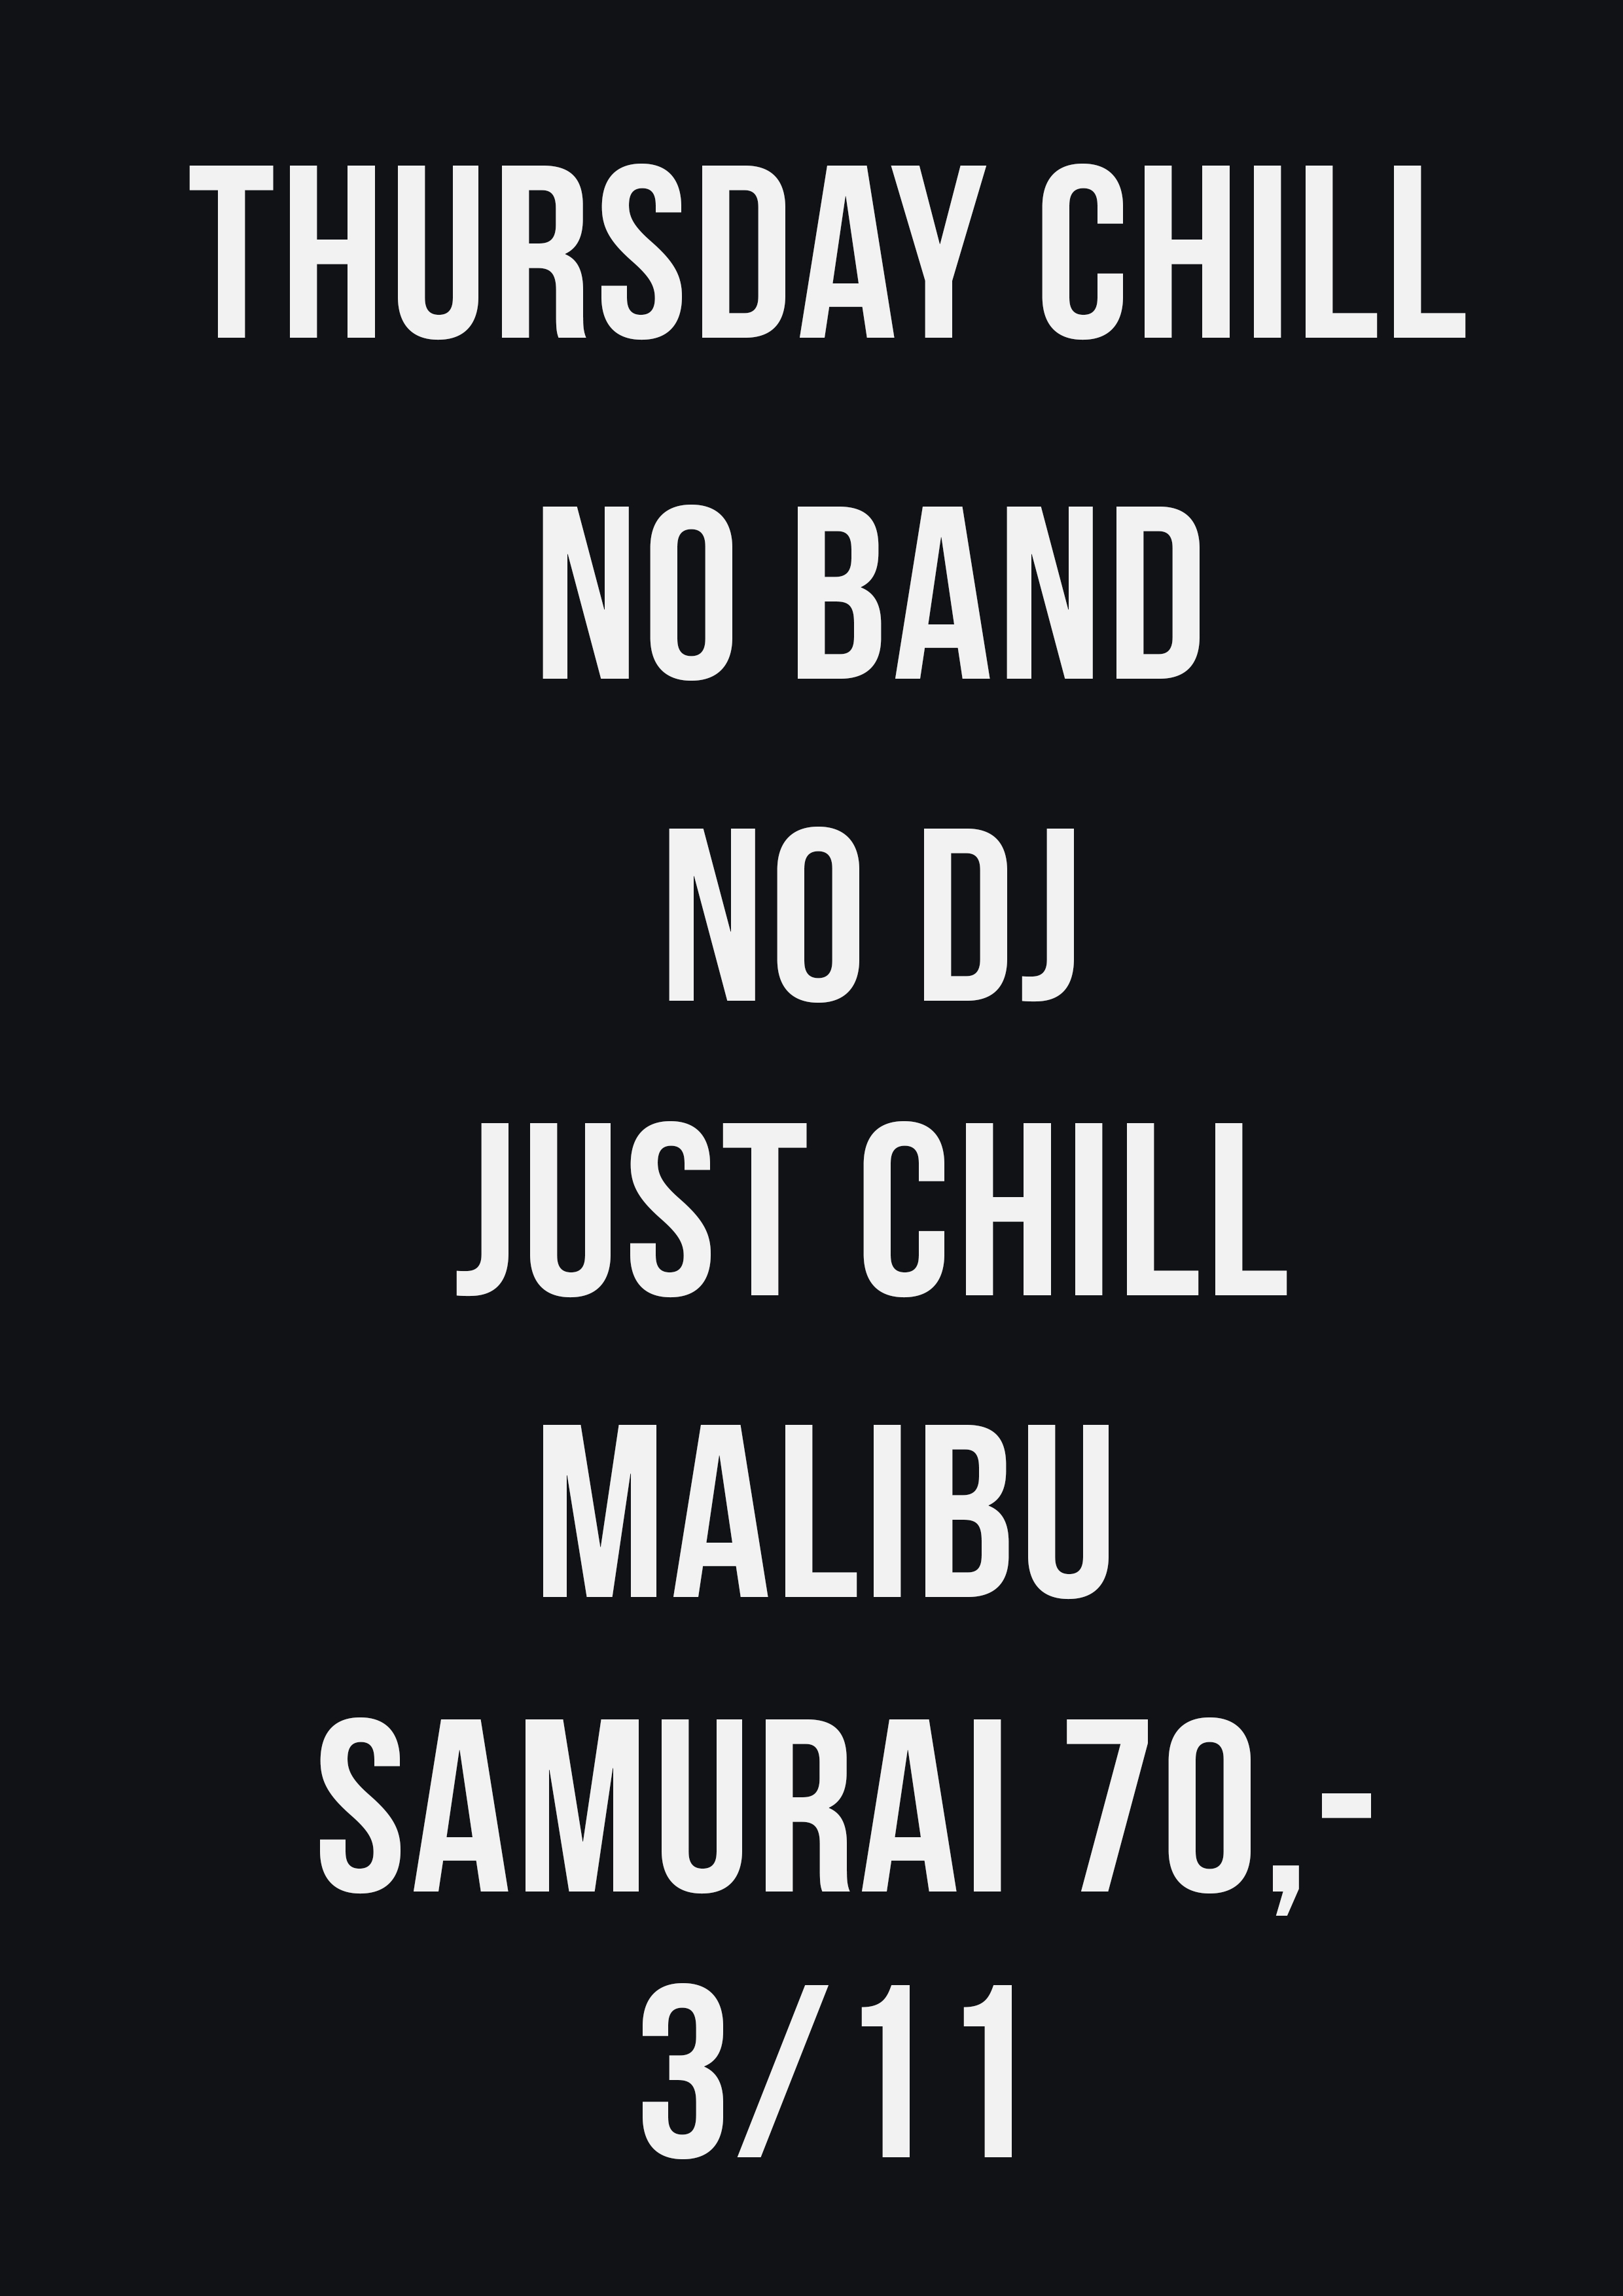 NO BAND, NO DJ, JUST CHILL